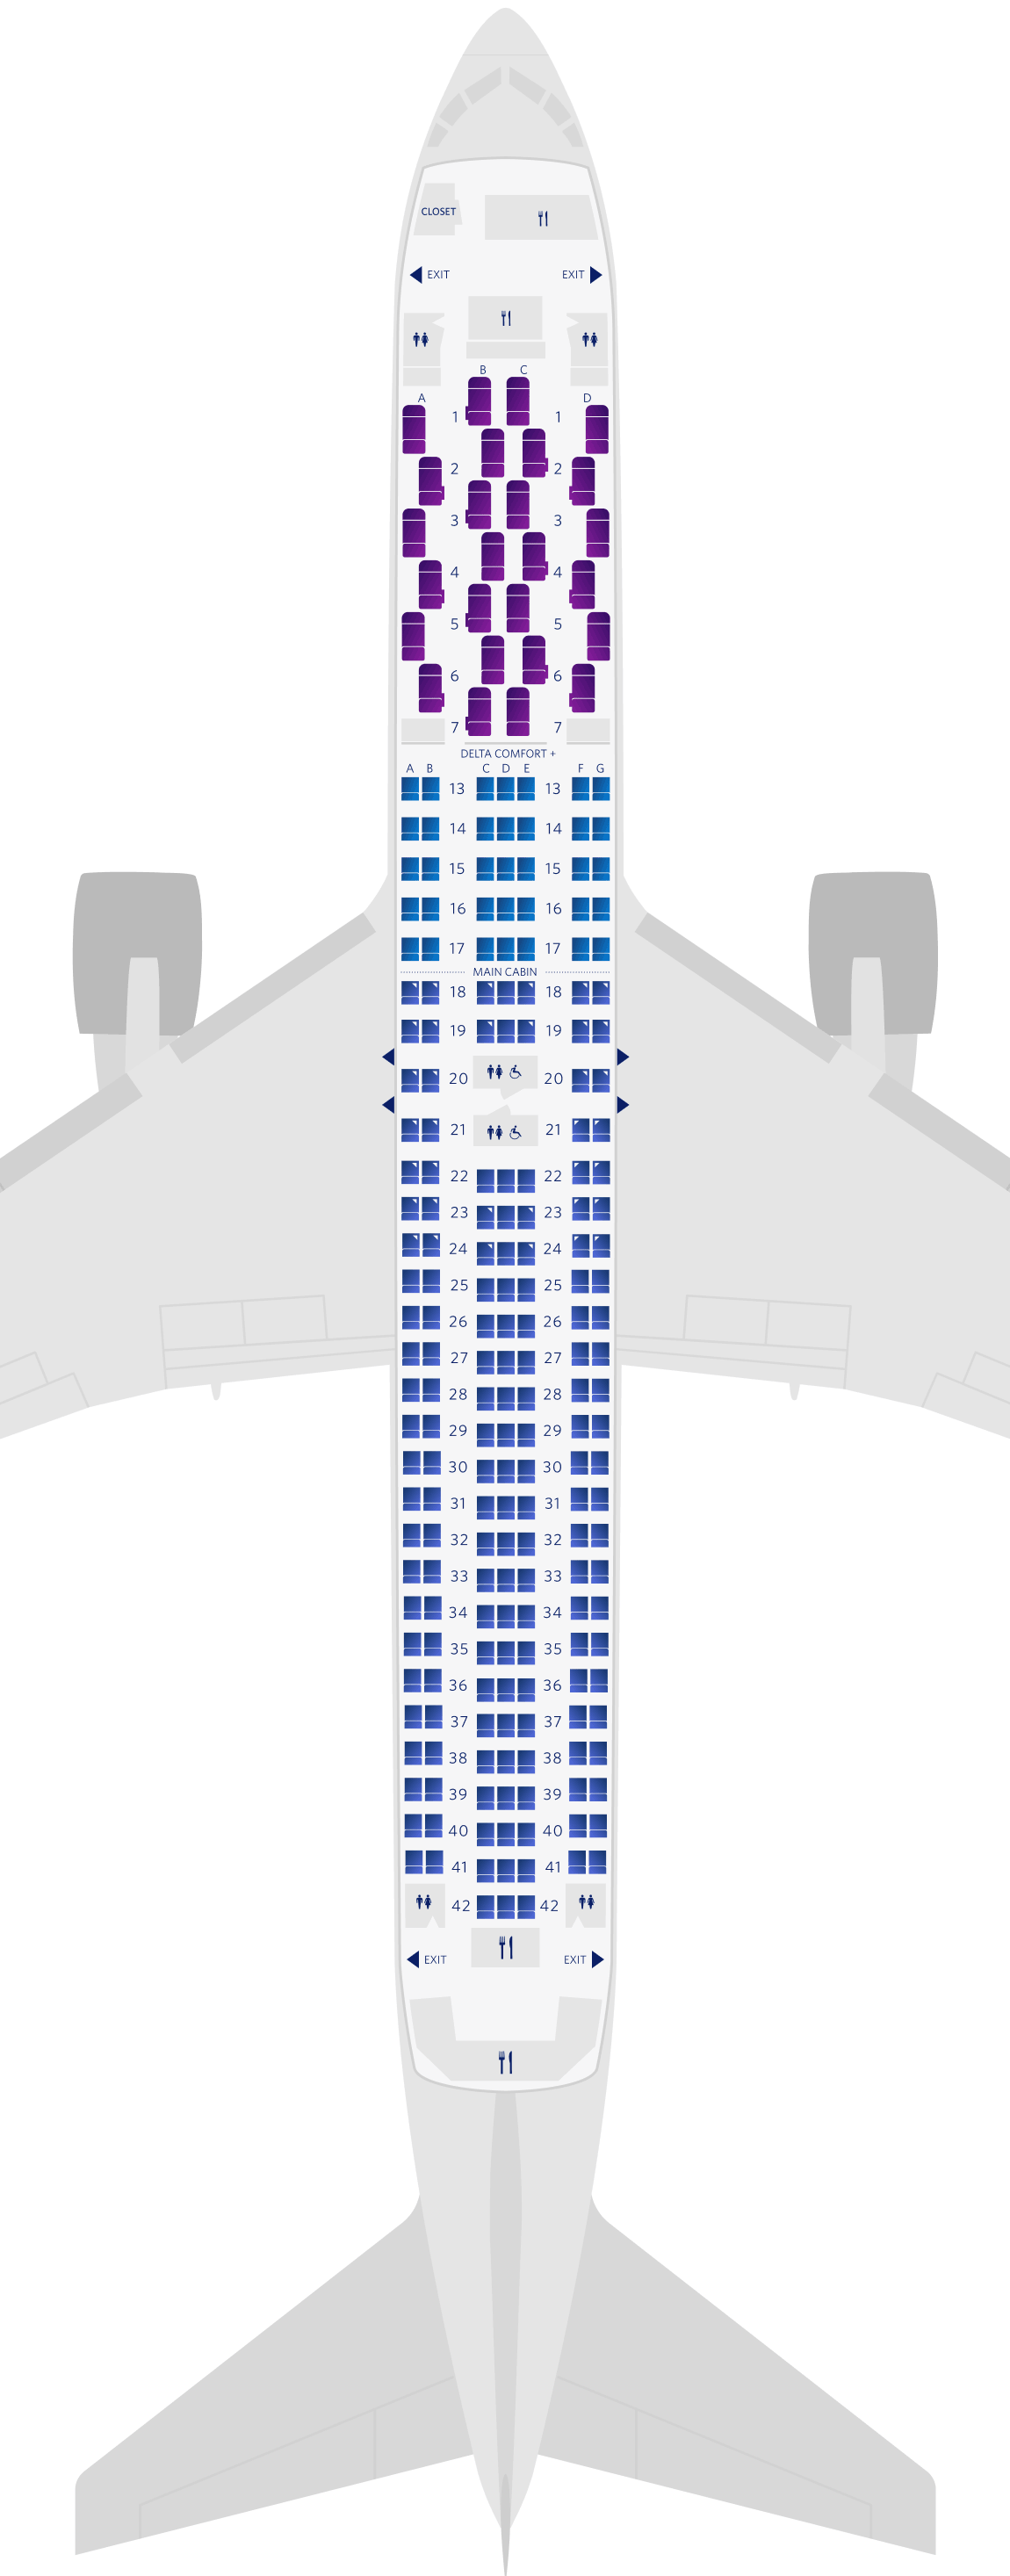 波音767-300ER (76Z)座位图